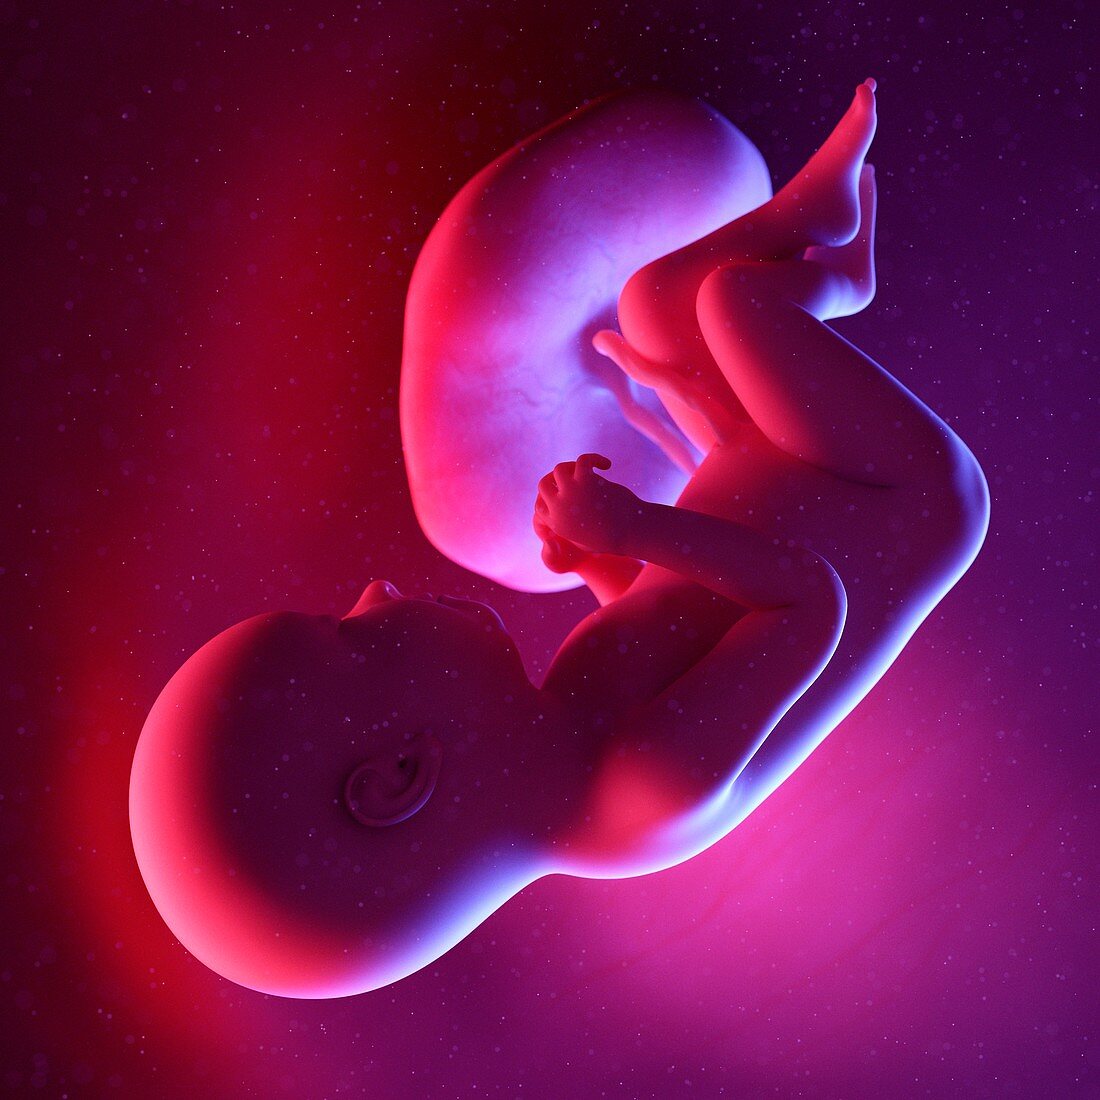 Fetus at week 37, illustration